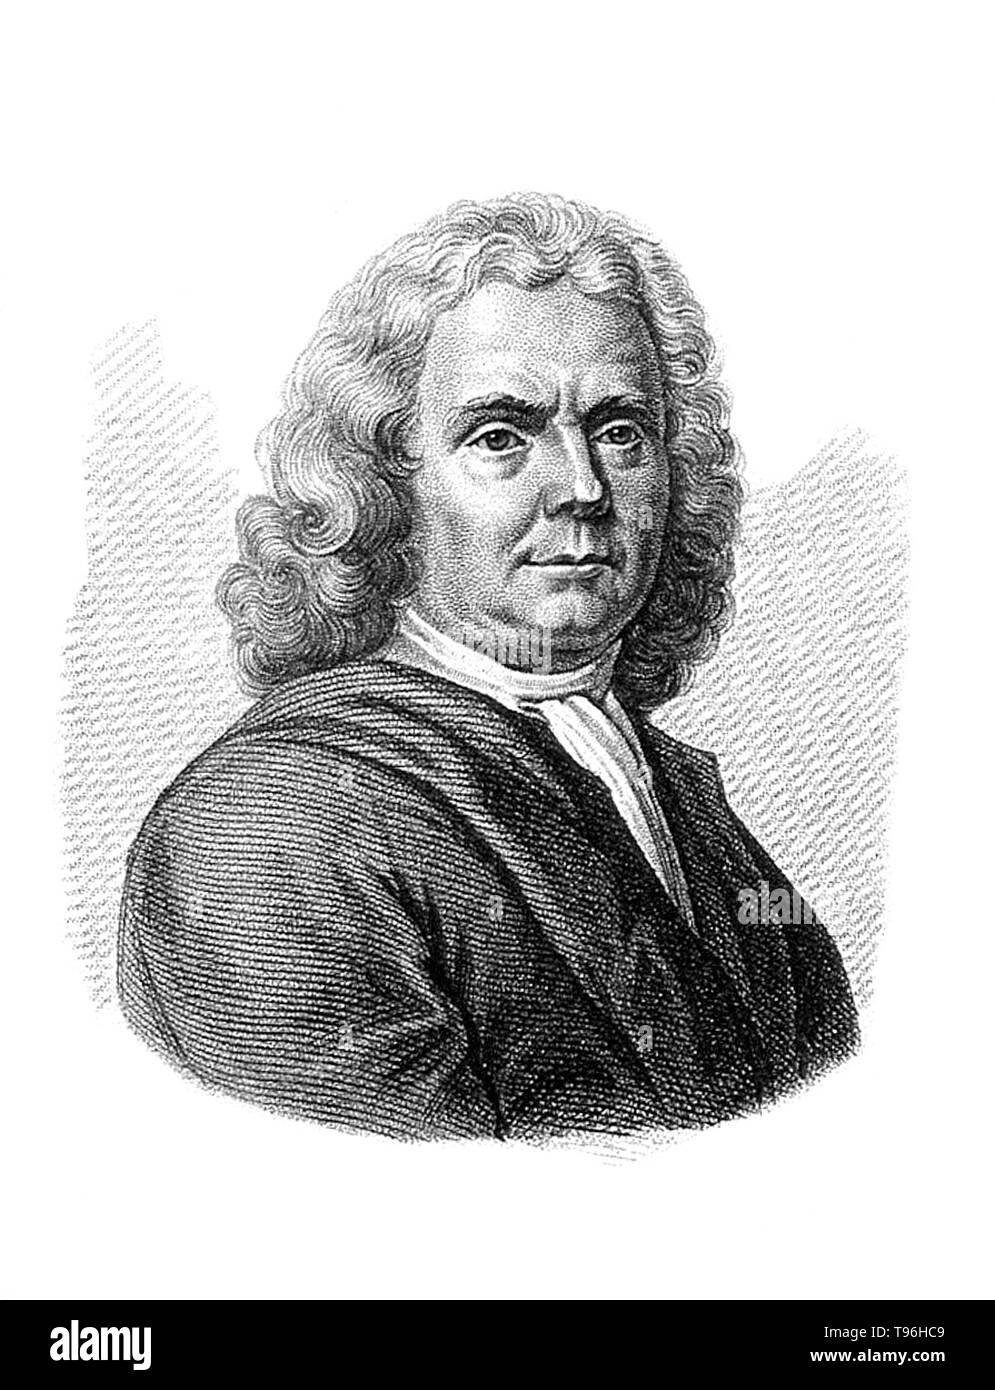 Herman Boerhaave (Décembre 31, 1668 - Septembre 23, 1738) était un botaniste néerlandais, chimiste, médecin et humaniste, considéré comme le fondateur de l'enseignement clinique et de l'hôpital universitaire moderne. Tous les princes de l'Europe lui a envoyé les élèves, qui ont trouvé dans ce savant professeur non seulement un professeur infatigable, mais un salut guardian. En 1714, lorsqu'il a été nommé recteur de l'université et à ce titre a introduit le système moderne d'enseignement clinique. Banque D'Images